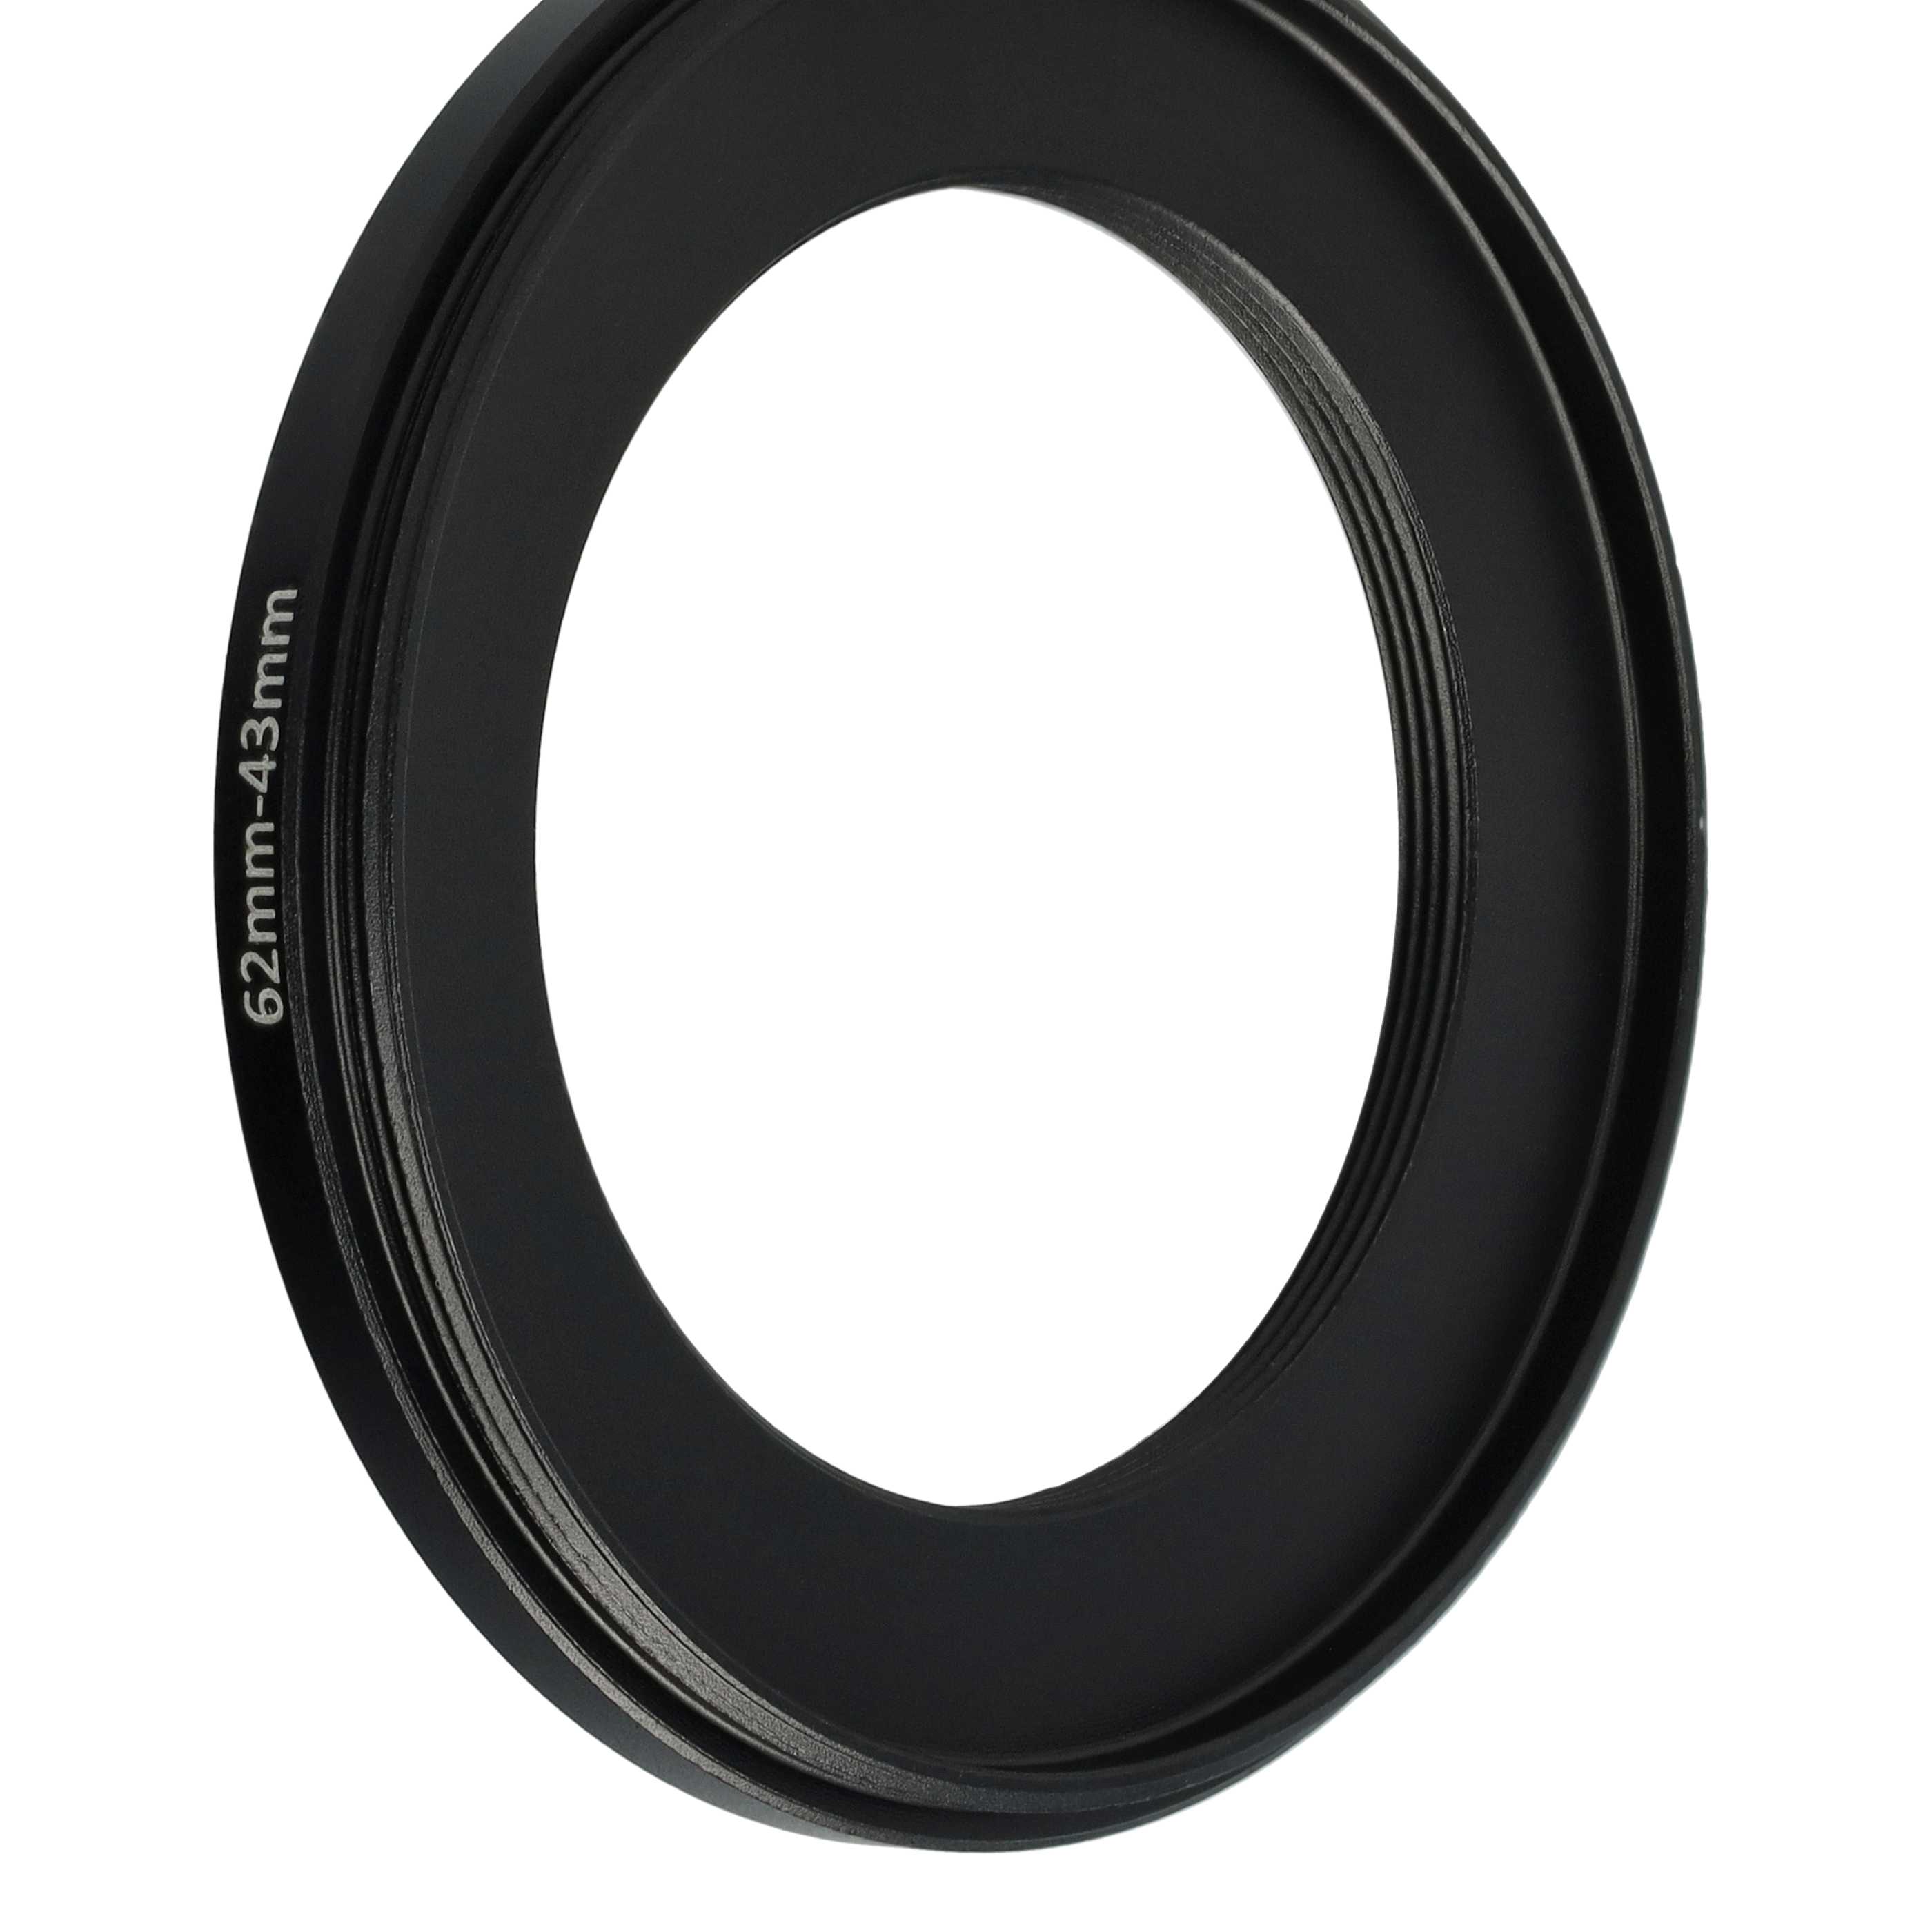 Redukcja filtrowa adapter Step-Down 62 mm - 43 mm pasująca do obiektywu - metal, czarny